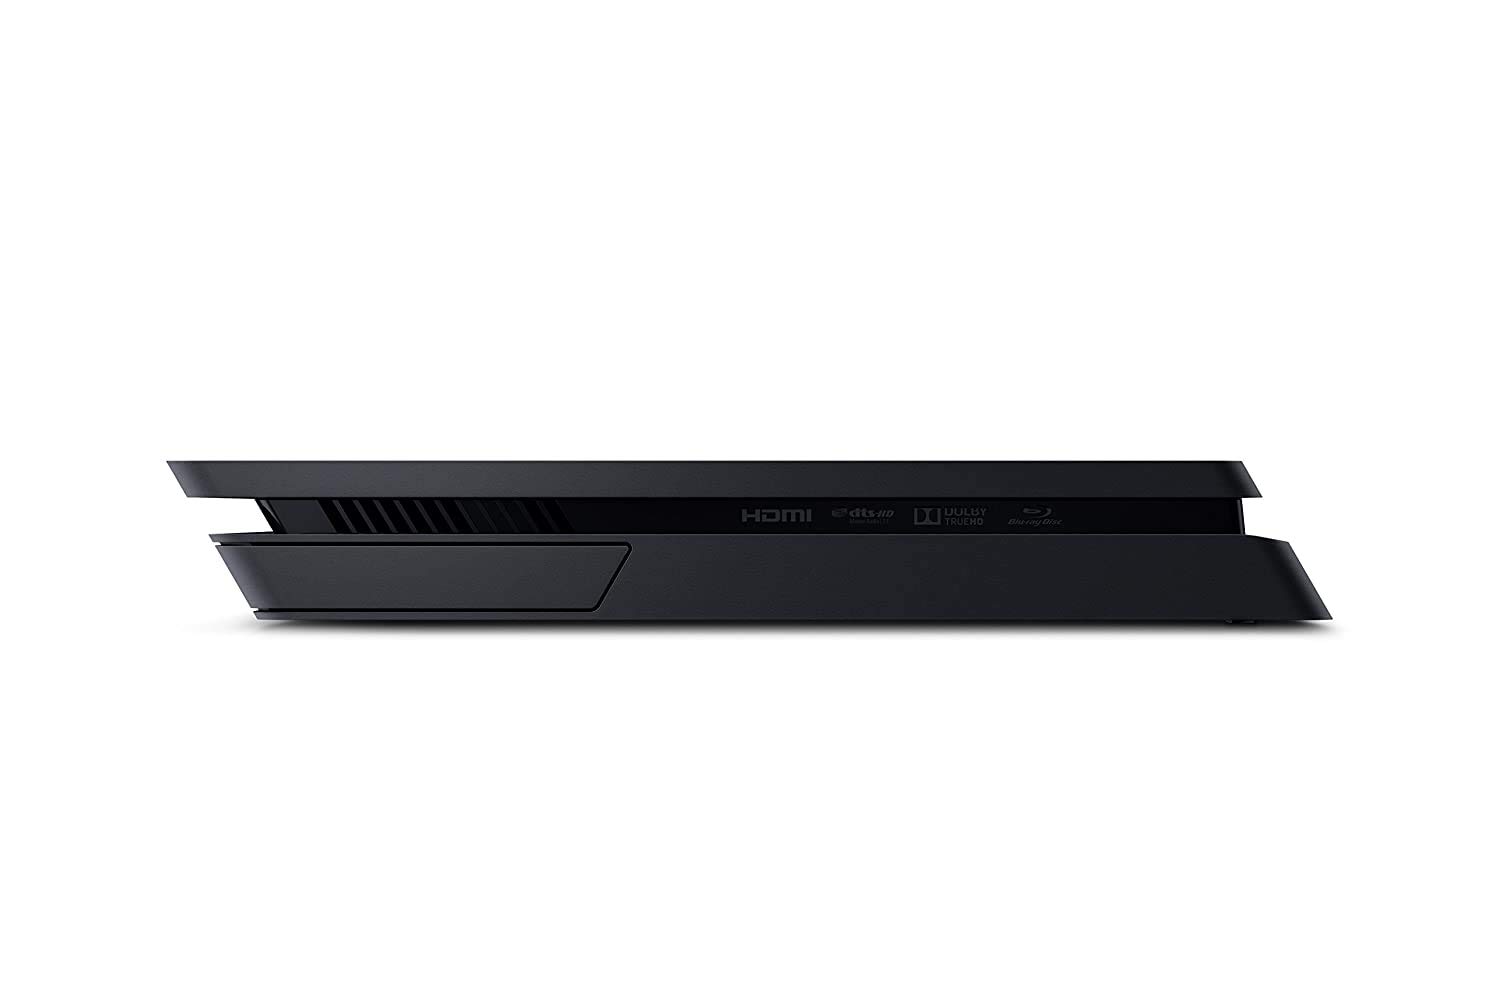 Playstation SONY 4, 500GB Slim System [CUH-2215AB01], Black, 3003347 (Renewed)